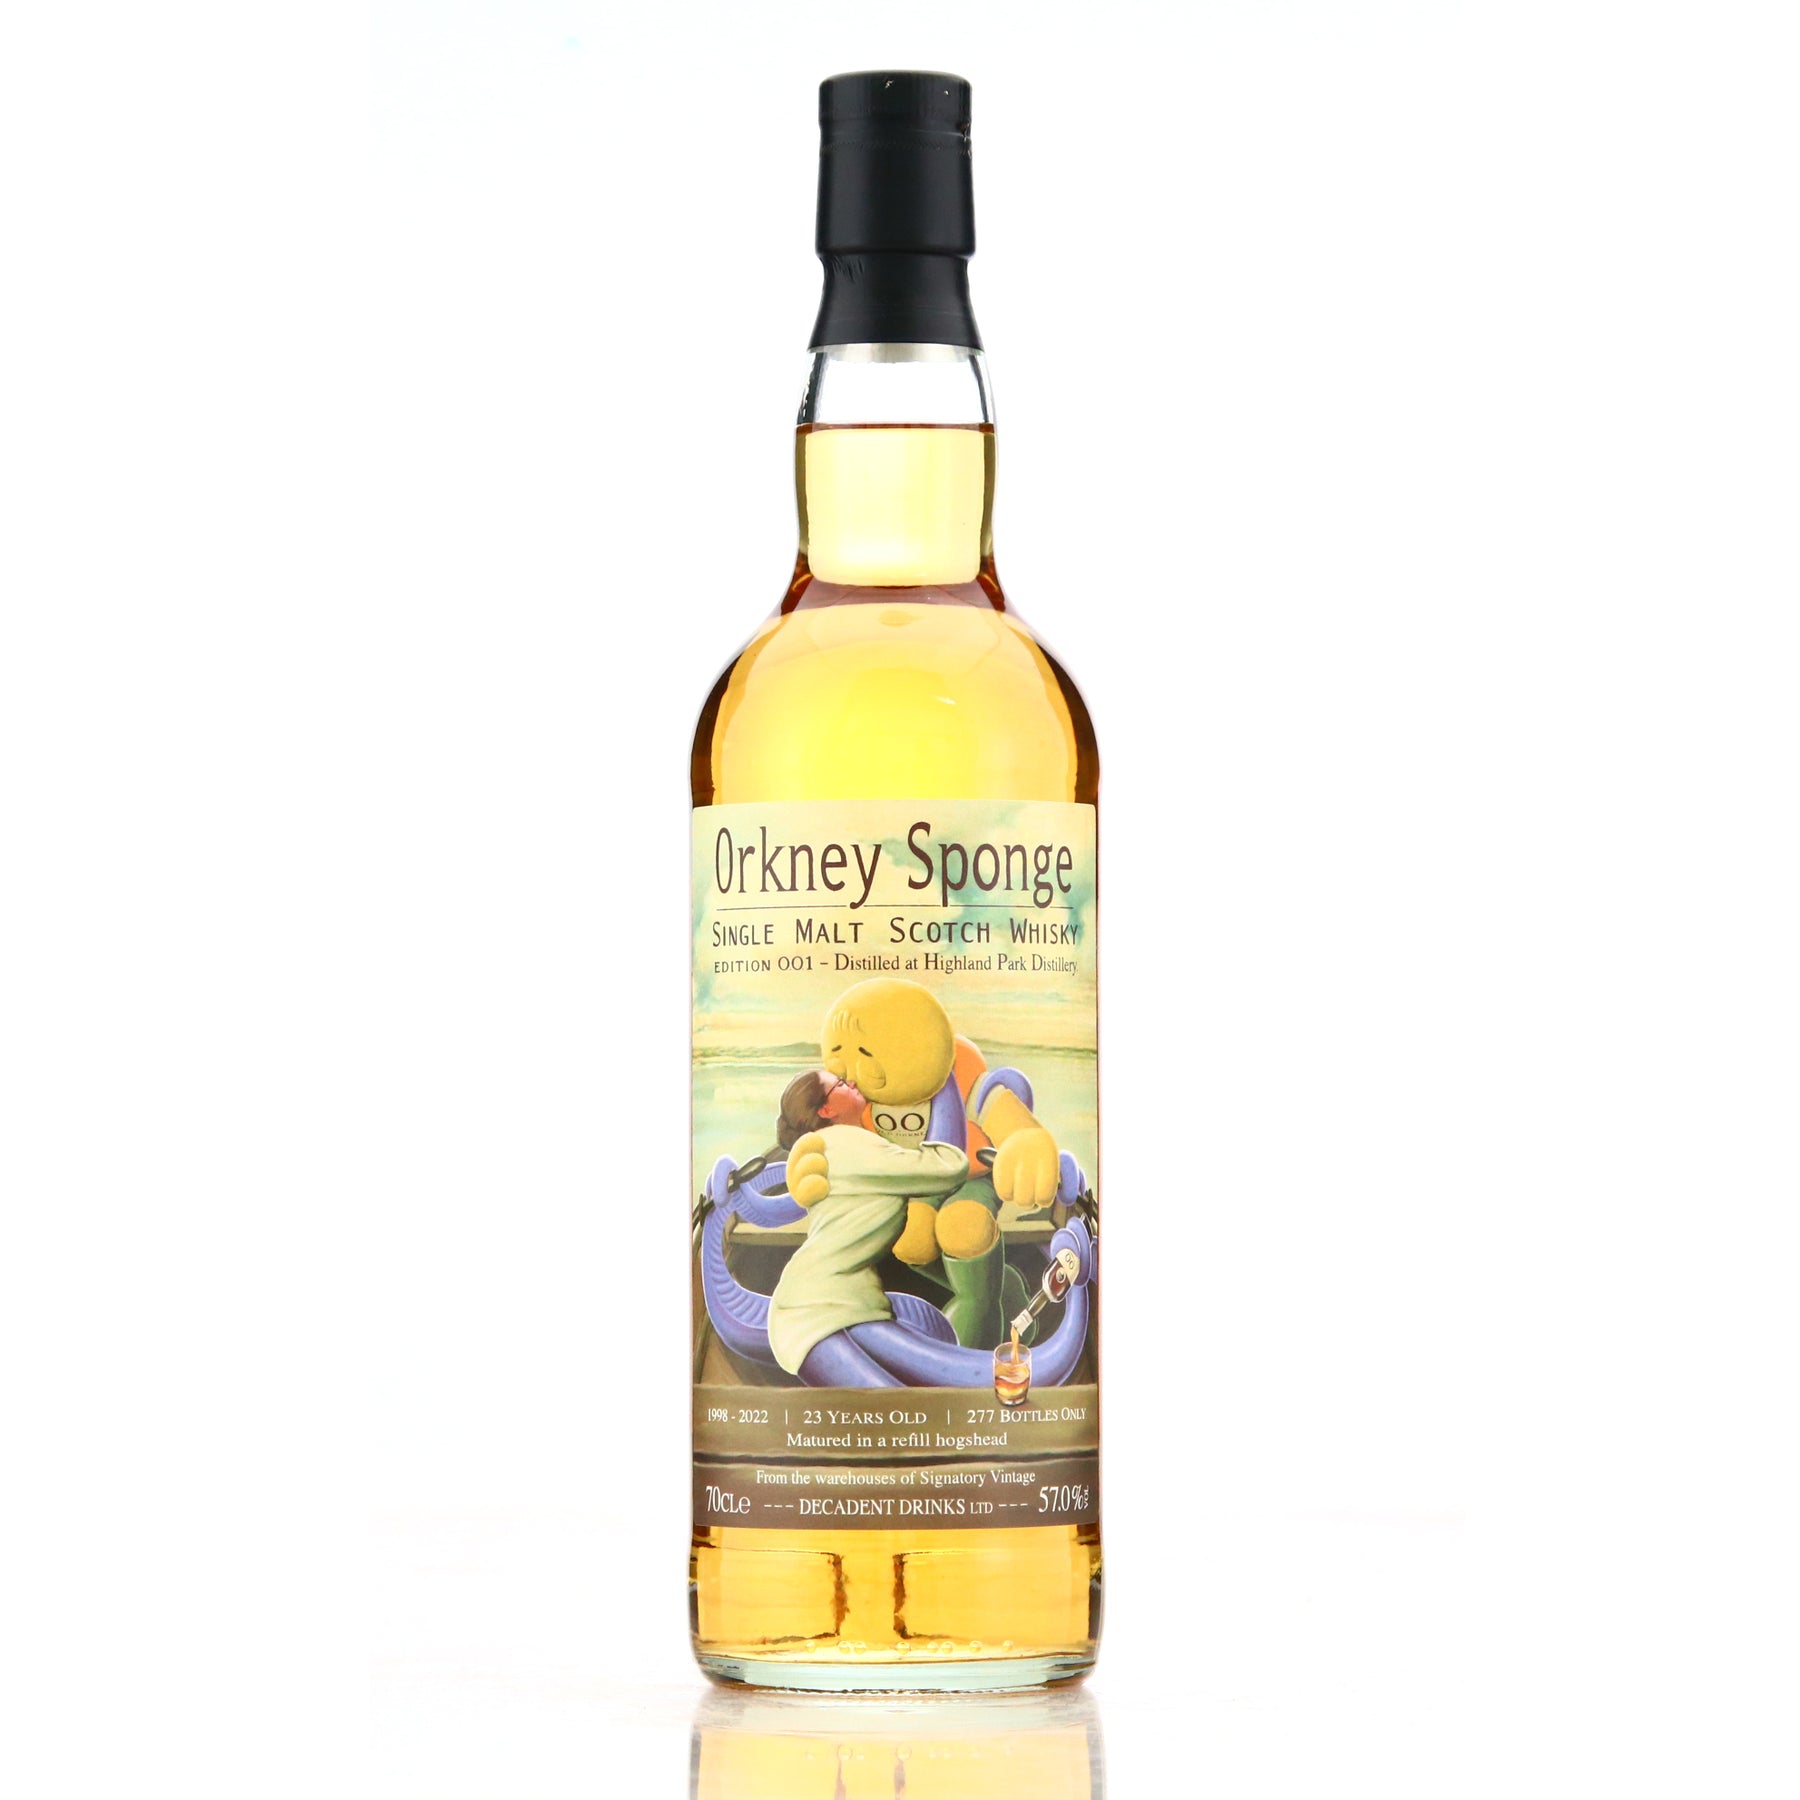 OrkneySponge Edition No. 1 1998 Highland Park 23 Year Old Single Cask Single Malt Scotch Whisky 700ml